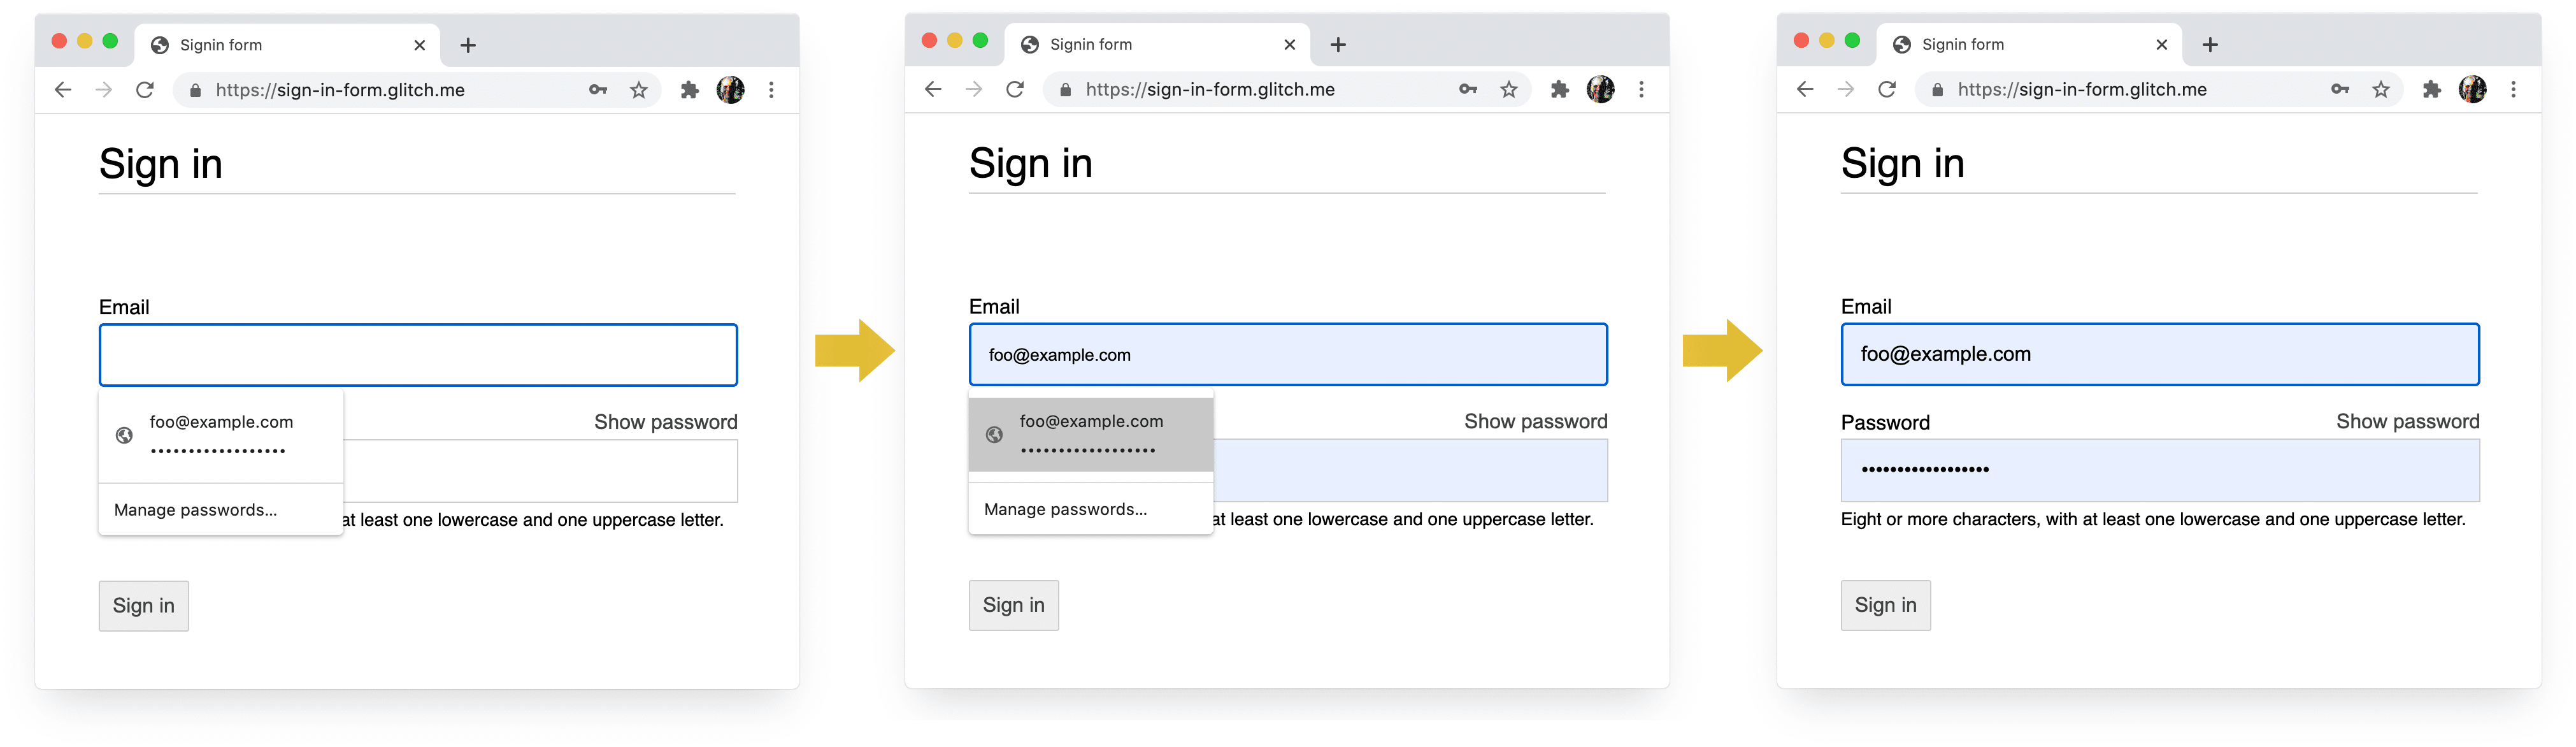 Zrzuty ekranu przedstawiające 4 etapy procesu logowania się w Chrome na komputerze: uzupełnianie e-maili, sugerowanie e-maili, menedżer haseł, autouzupełnianie przy wyborze.